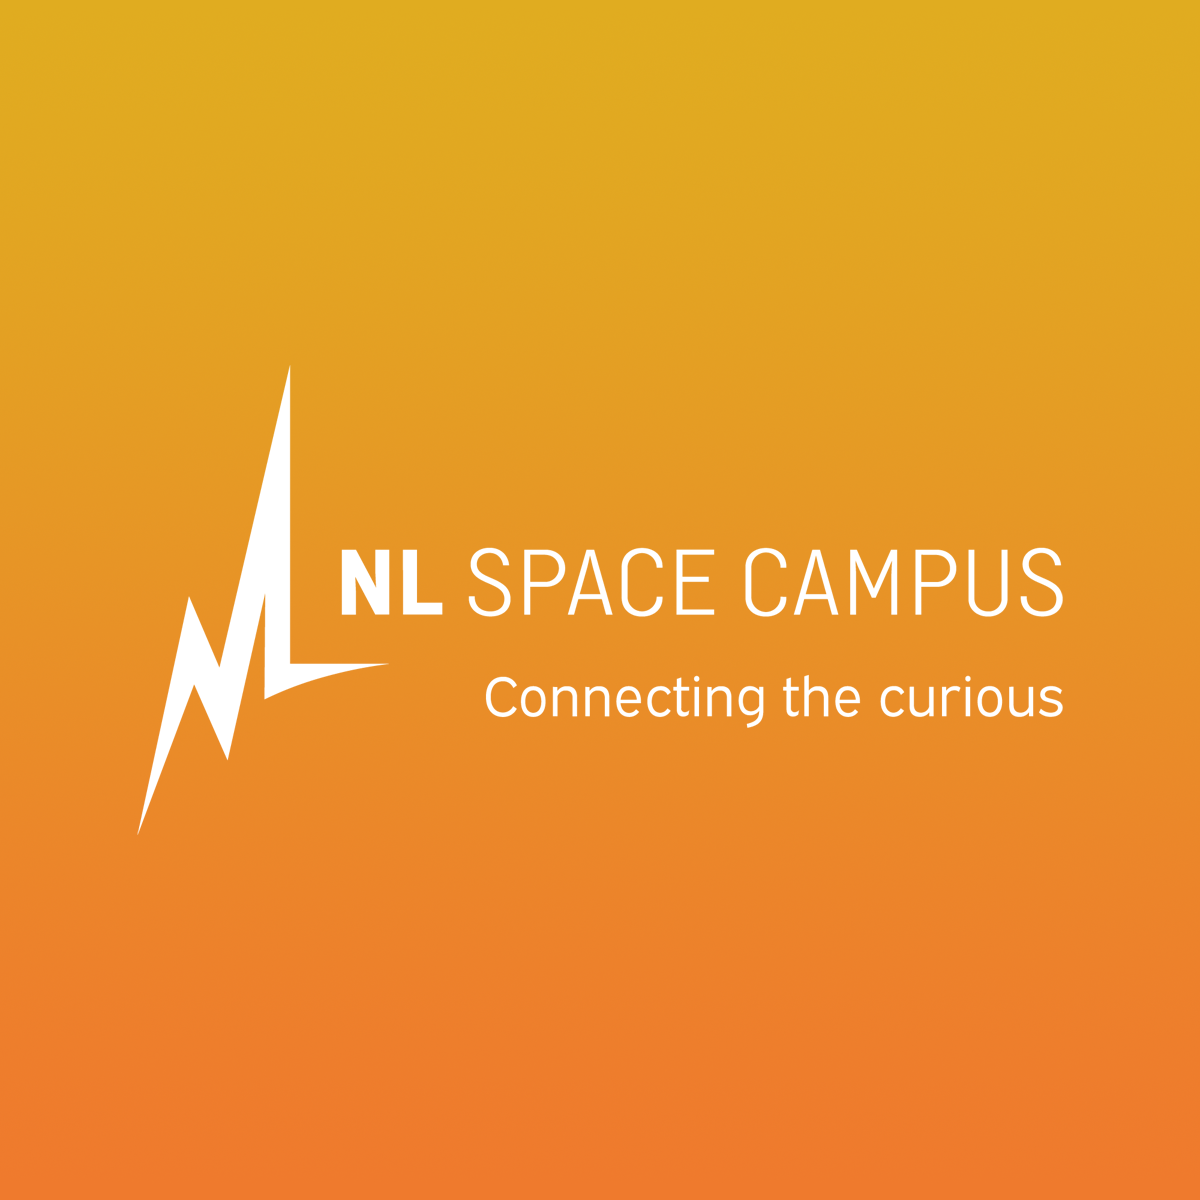 NL Space Campus